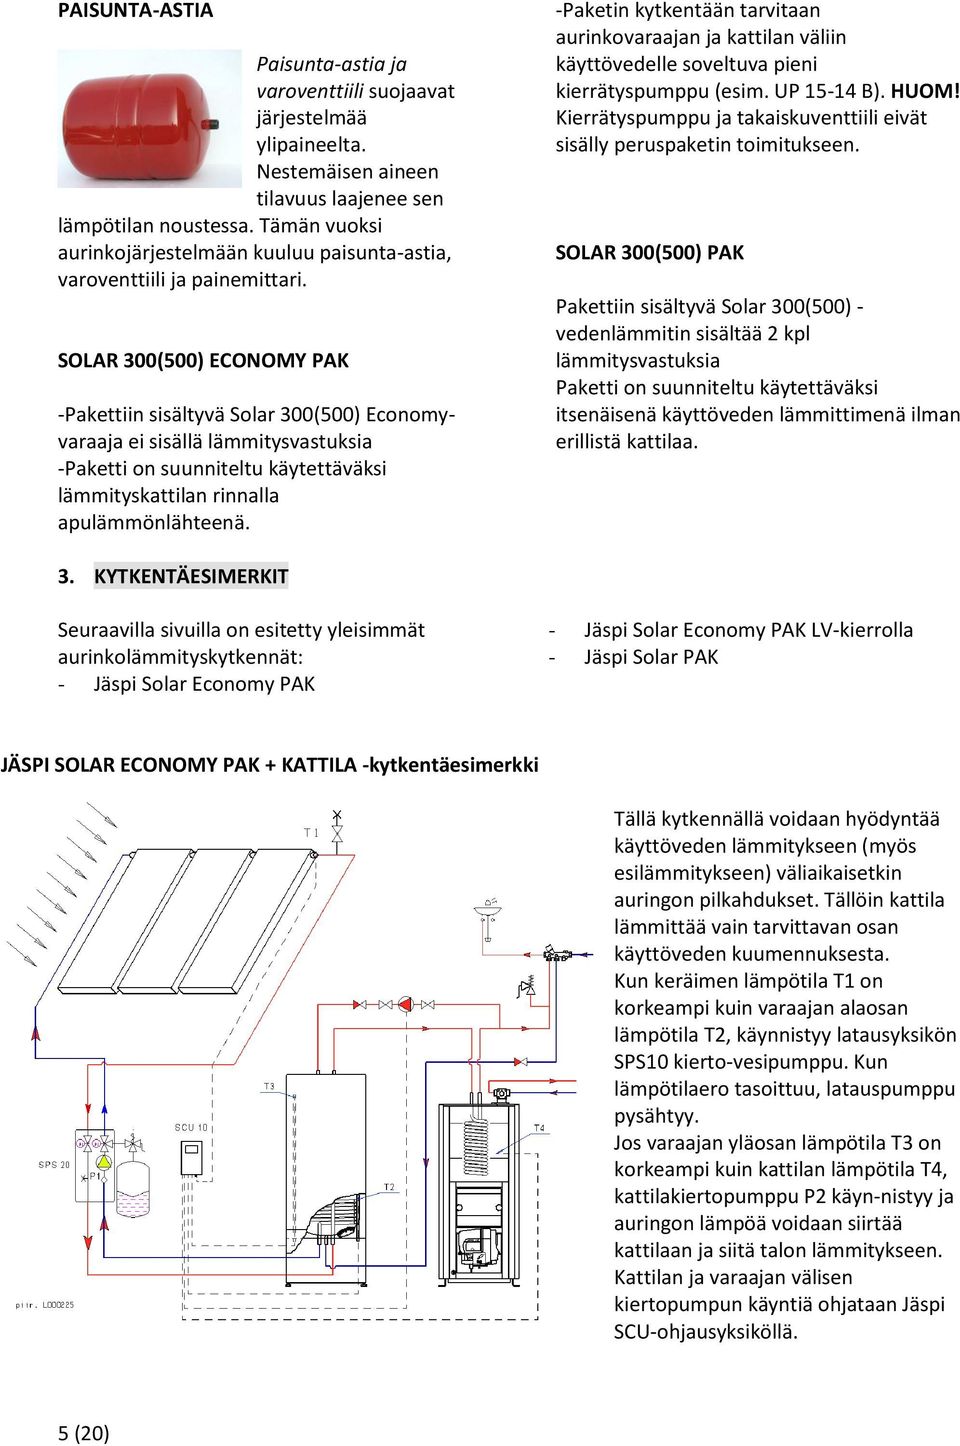 SOLAR 300(500) ECONOMY PAK -Pakettiin sisältyvä Solar 300(500) Economyvaraaja ei sisällä lämmitysvastuksia -Paketti on suunniteltu käytettäväksi lämmityskattilan rinnalla apulämmönlähteenä.